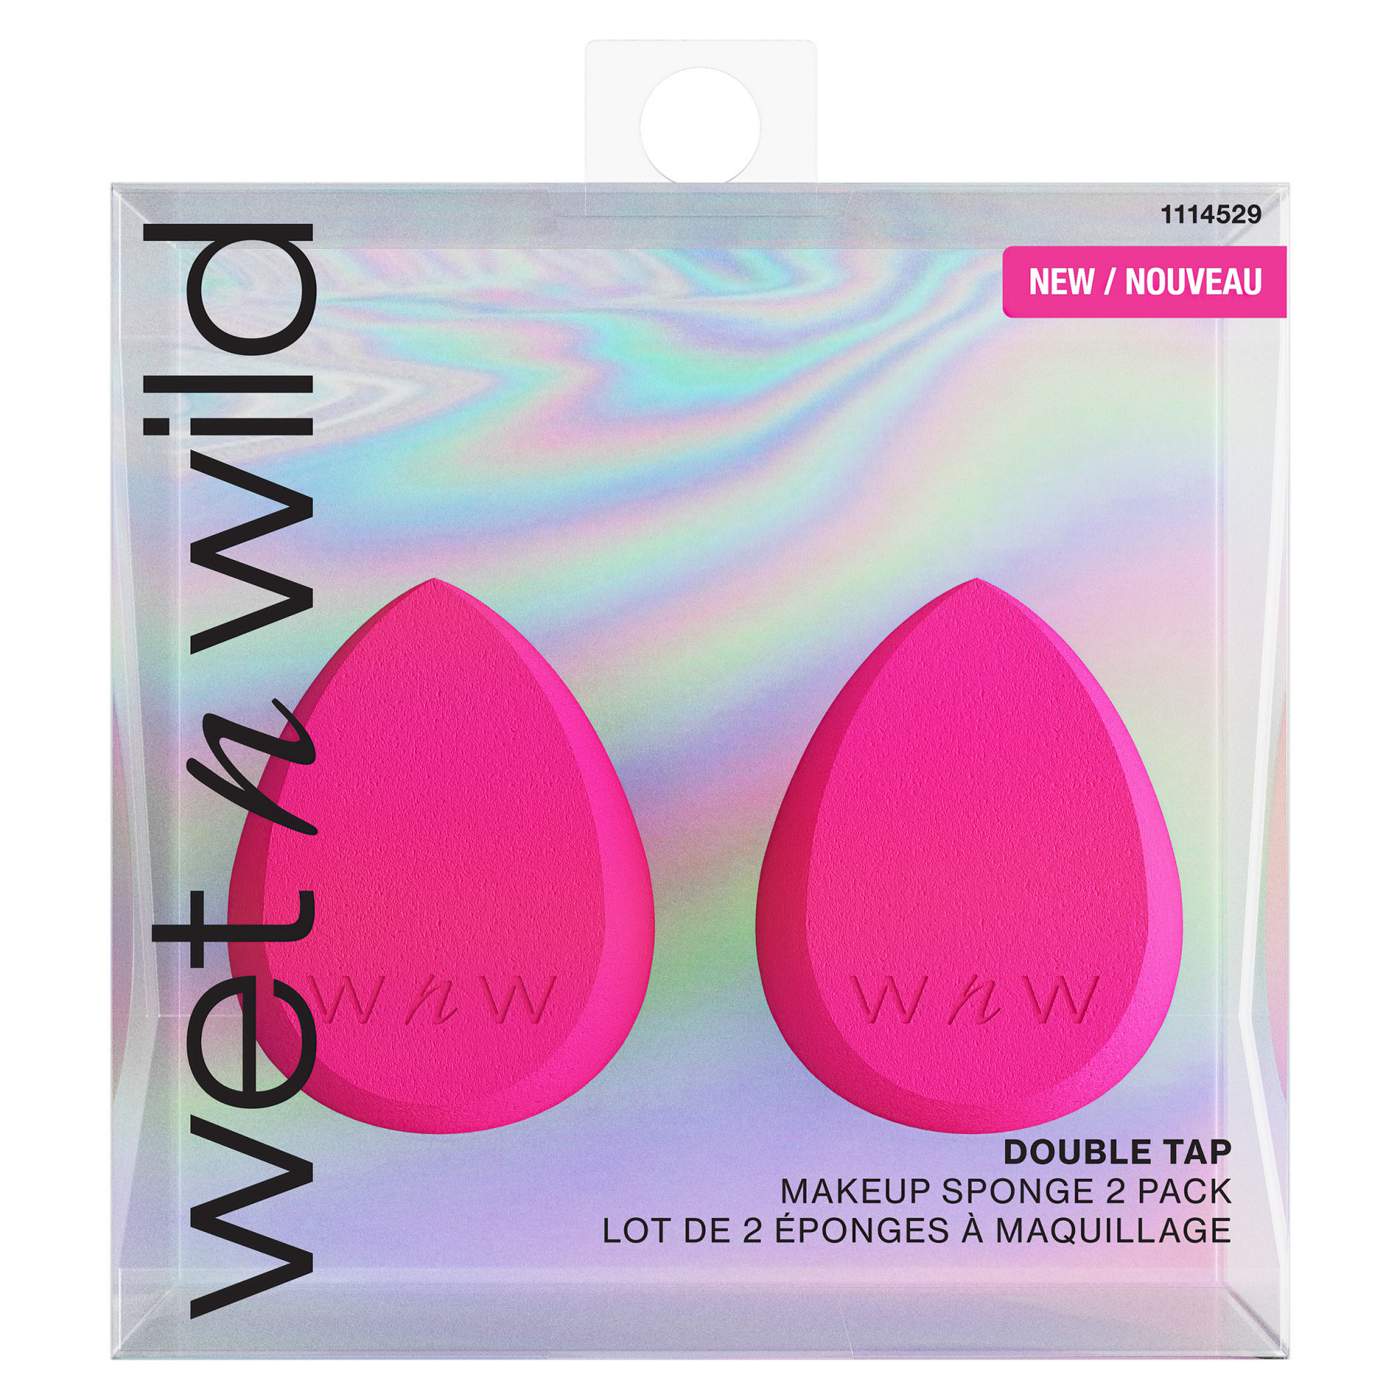 Wet n Wild Double Tap Makeup Sponges; image 1 of 3